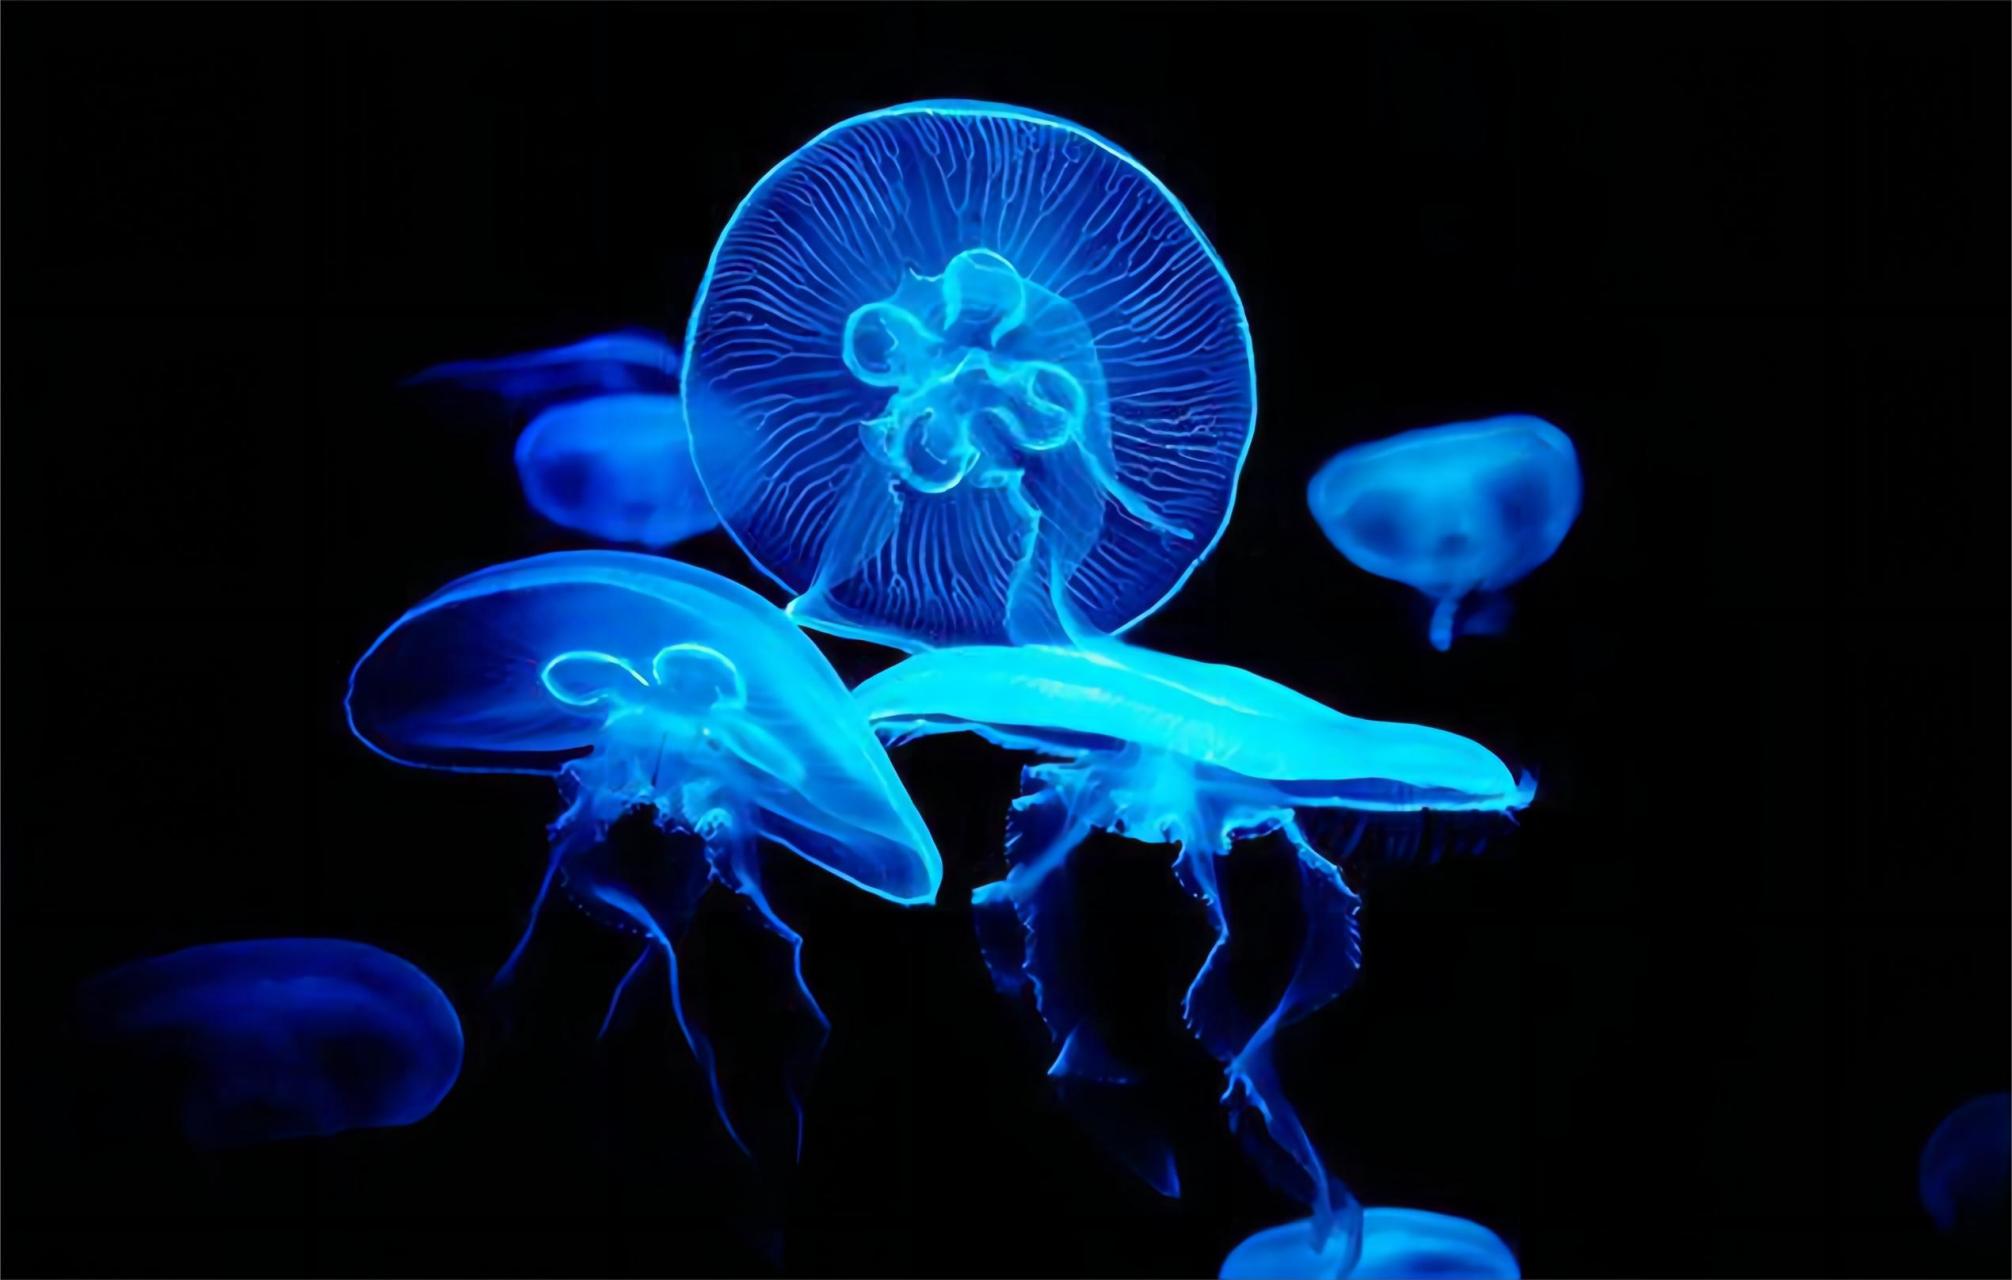 海洋深处的光之奇观:生物发光现象       在海洋深处,有许多生物能够